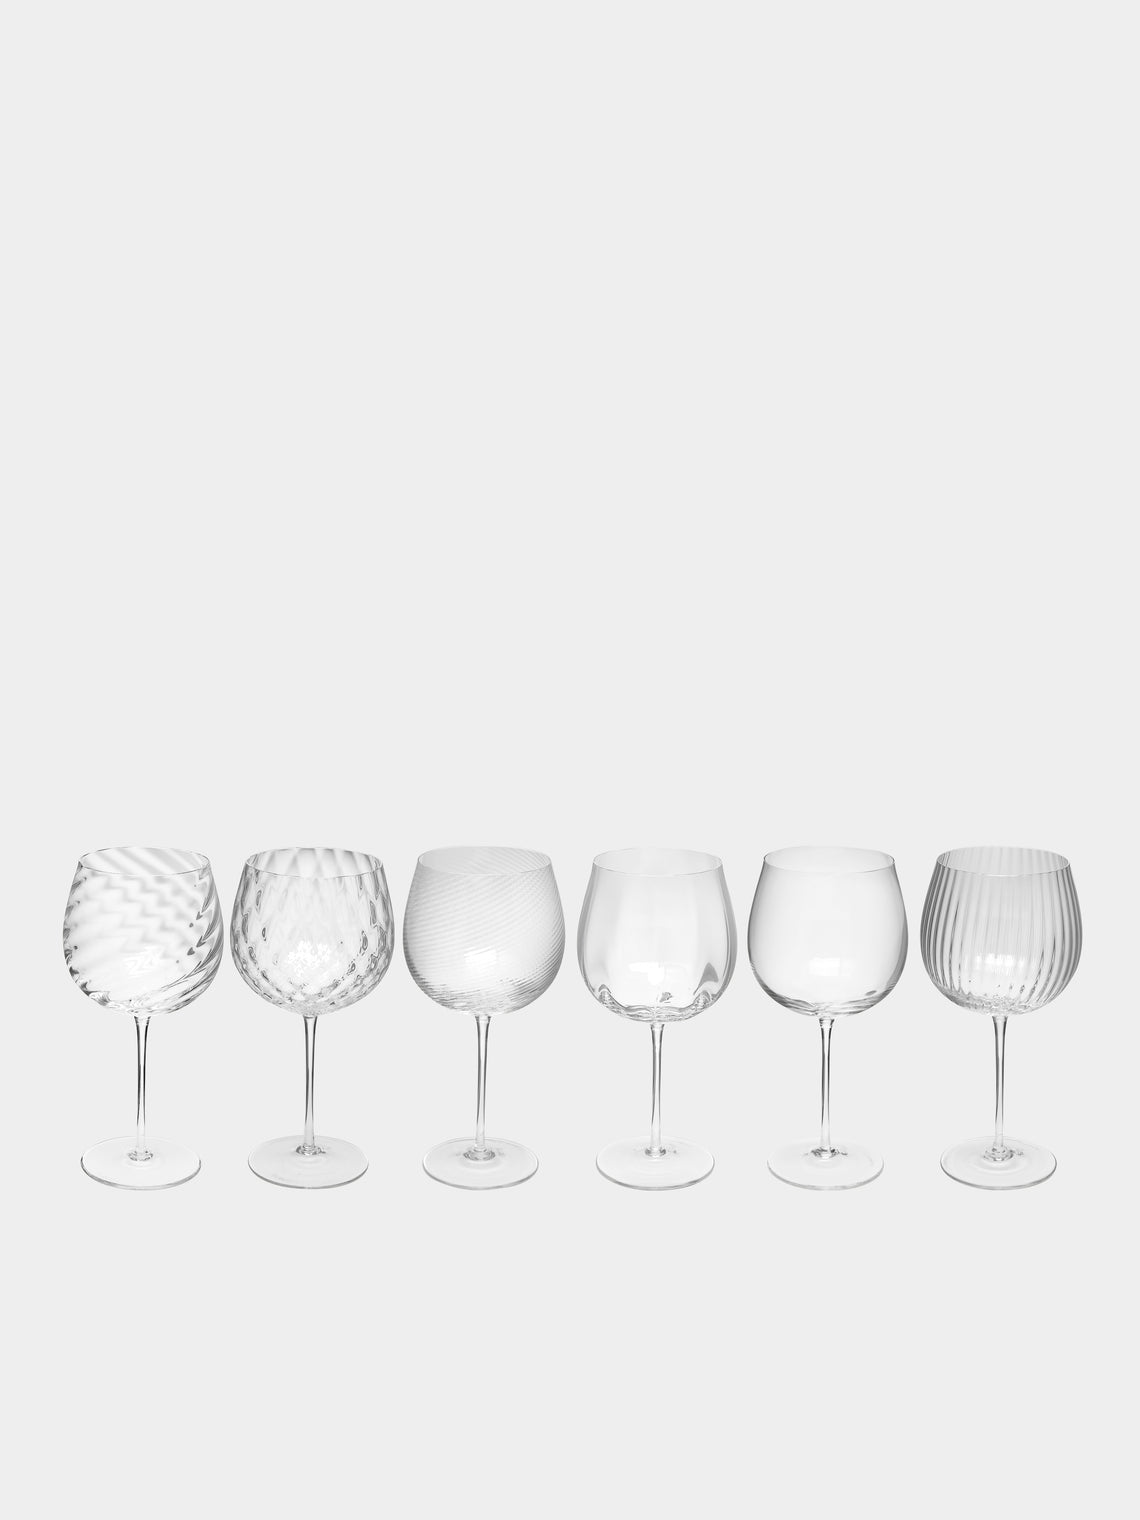 NasonMoretti - Tolomeo Hand-Blown Murano Red Wine Glasses (Set of 6) -  - ABASK